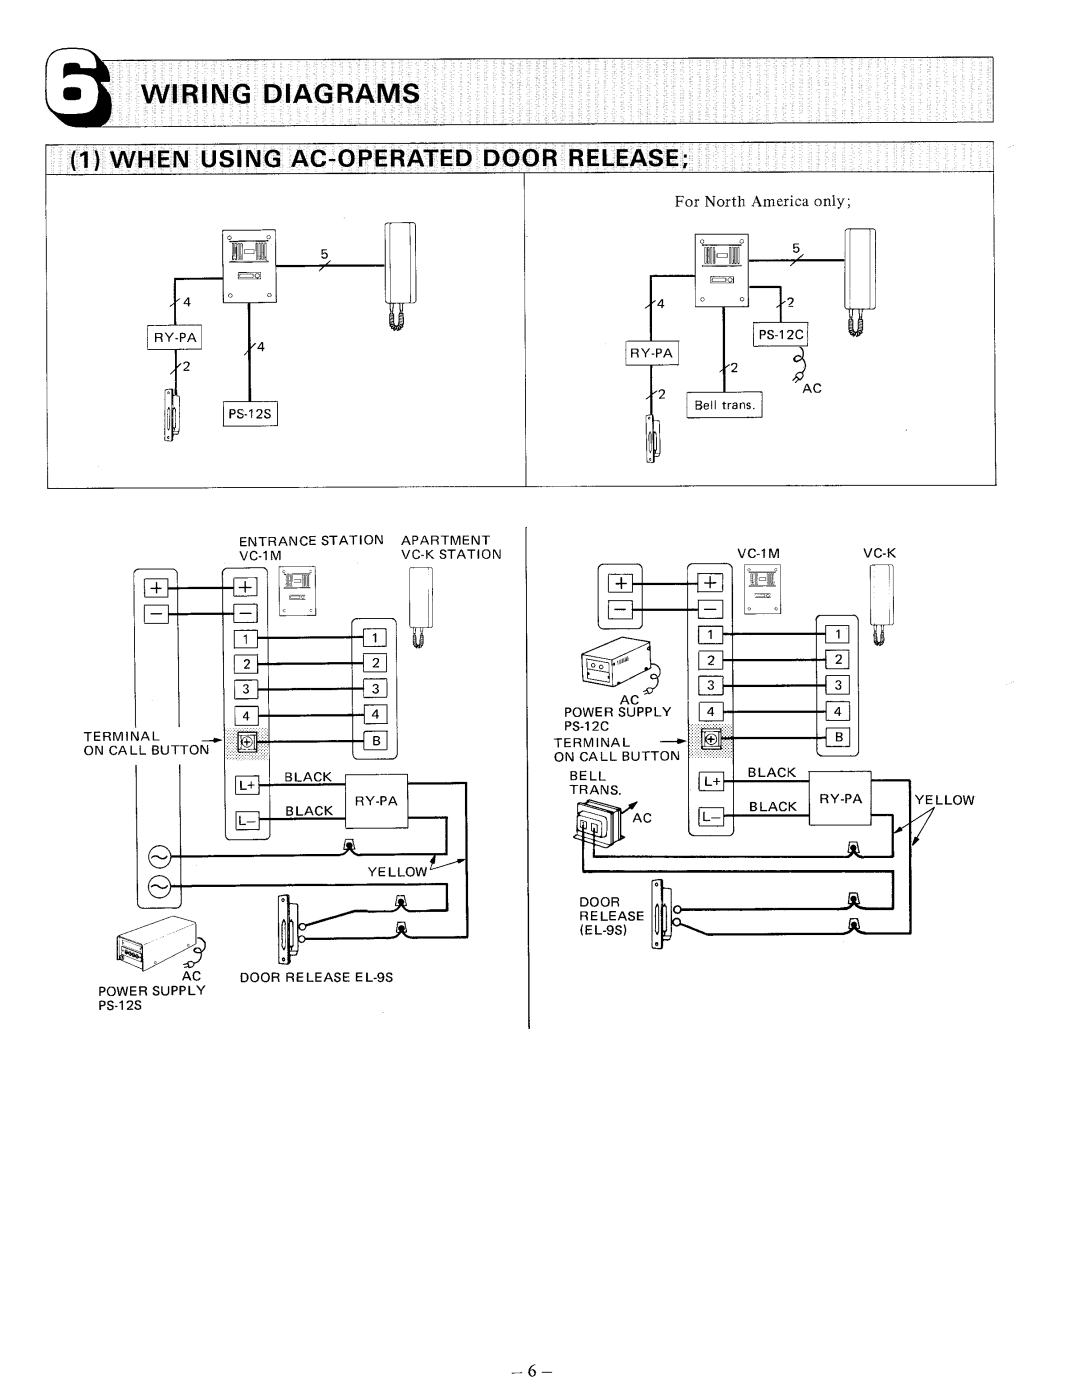 Aiphone VCH-8, VC-K, VCH-16, VC-58MT, VC-26MT manual 